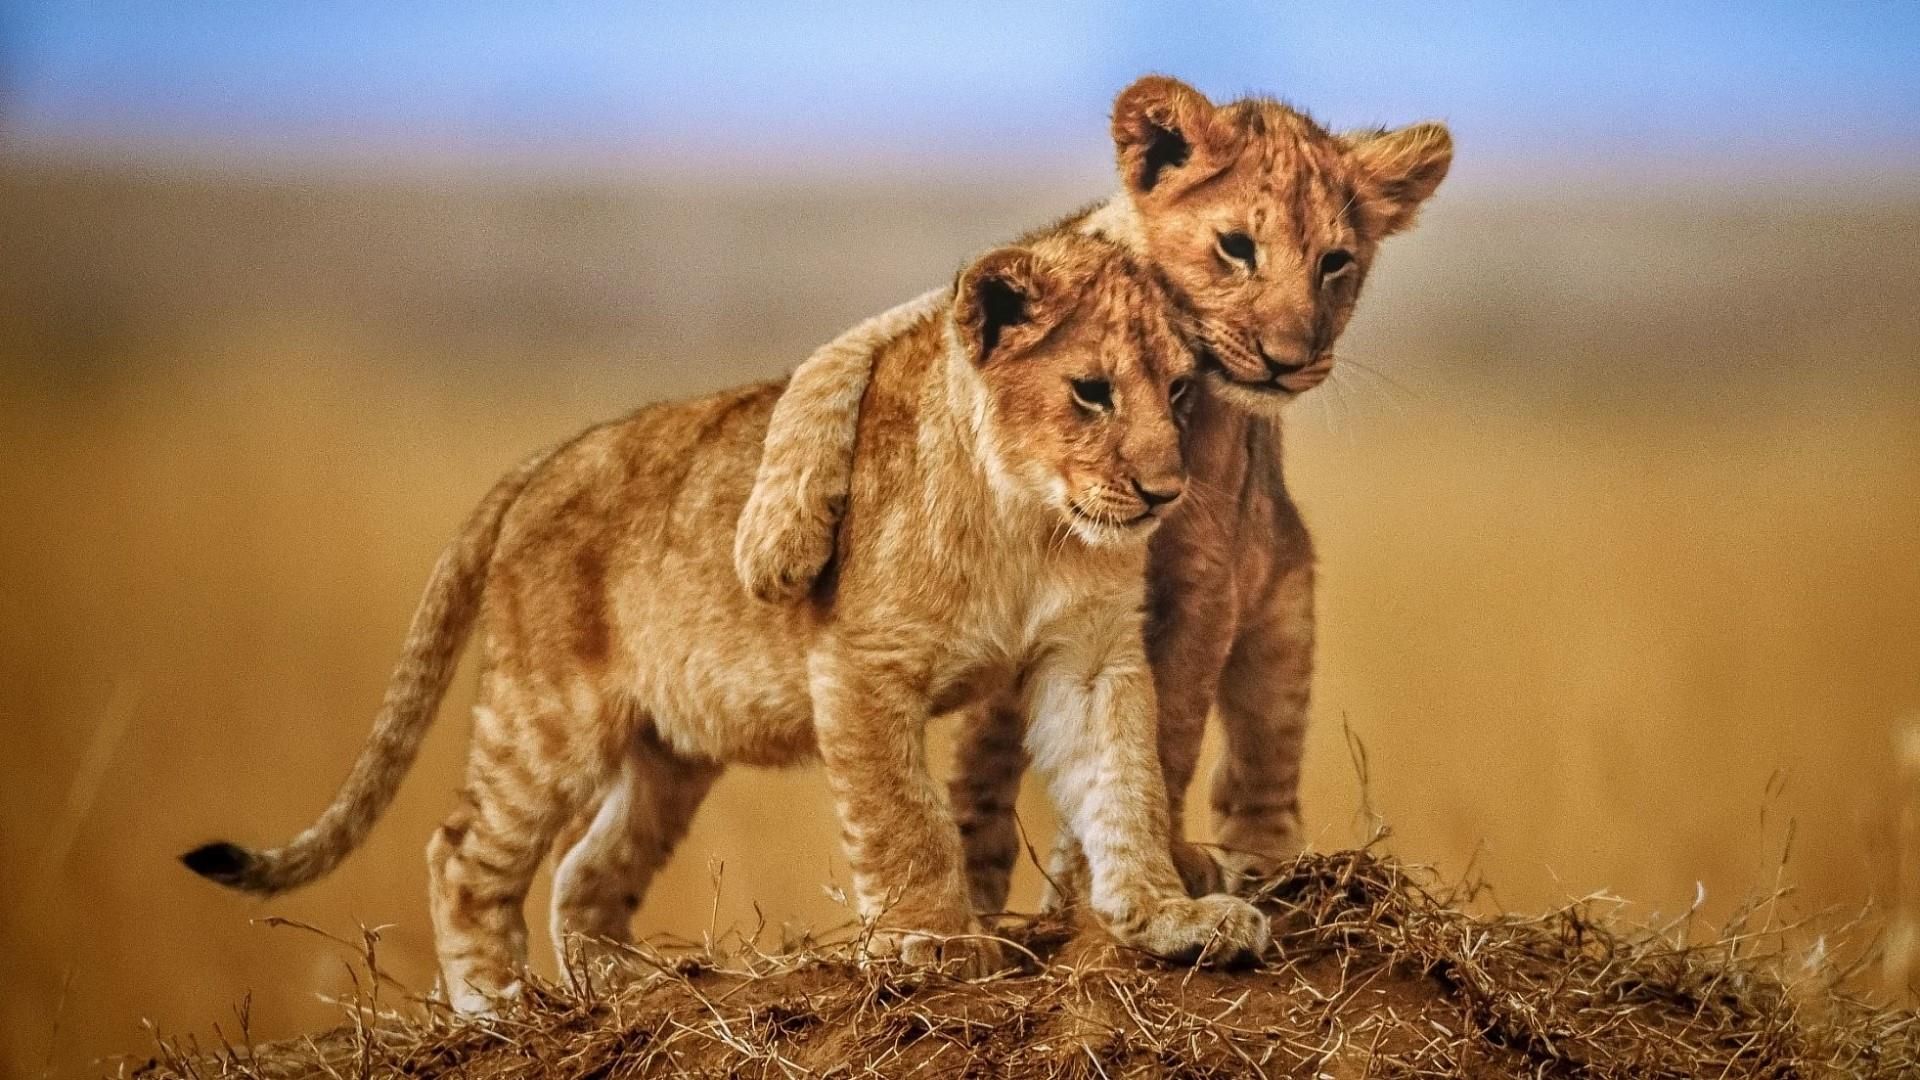 Cute lion cubs